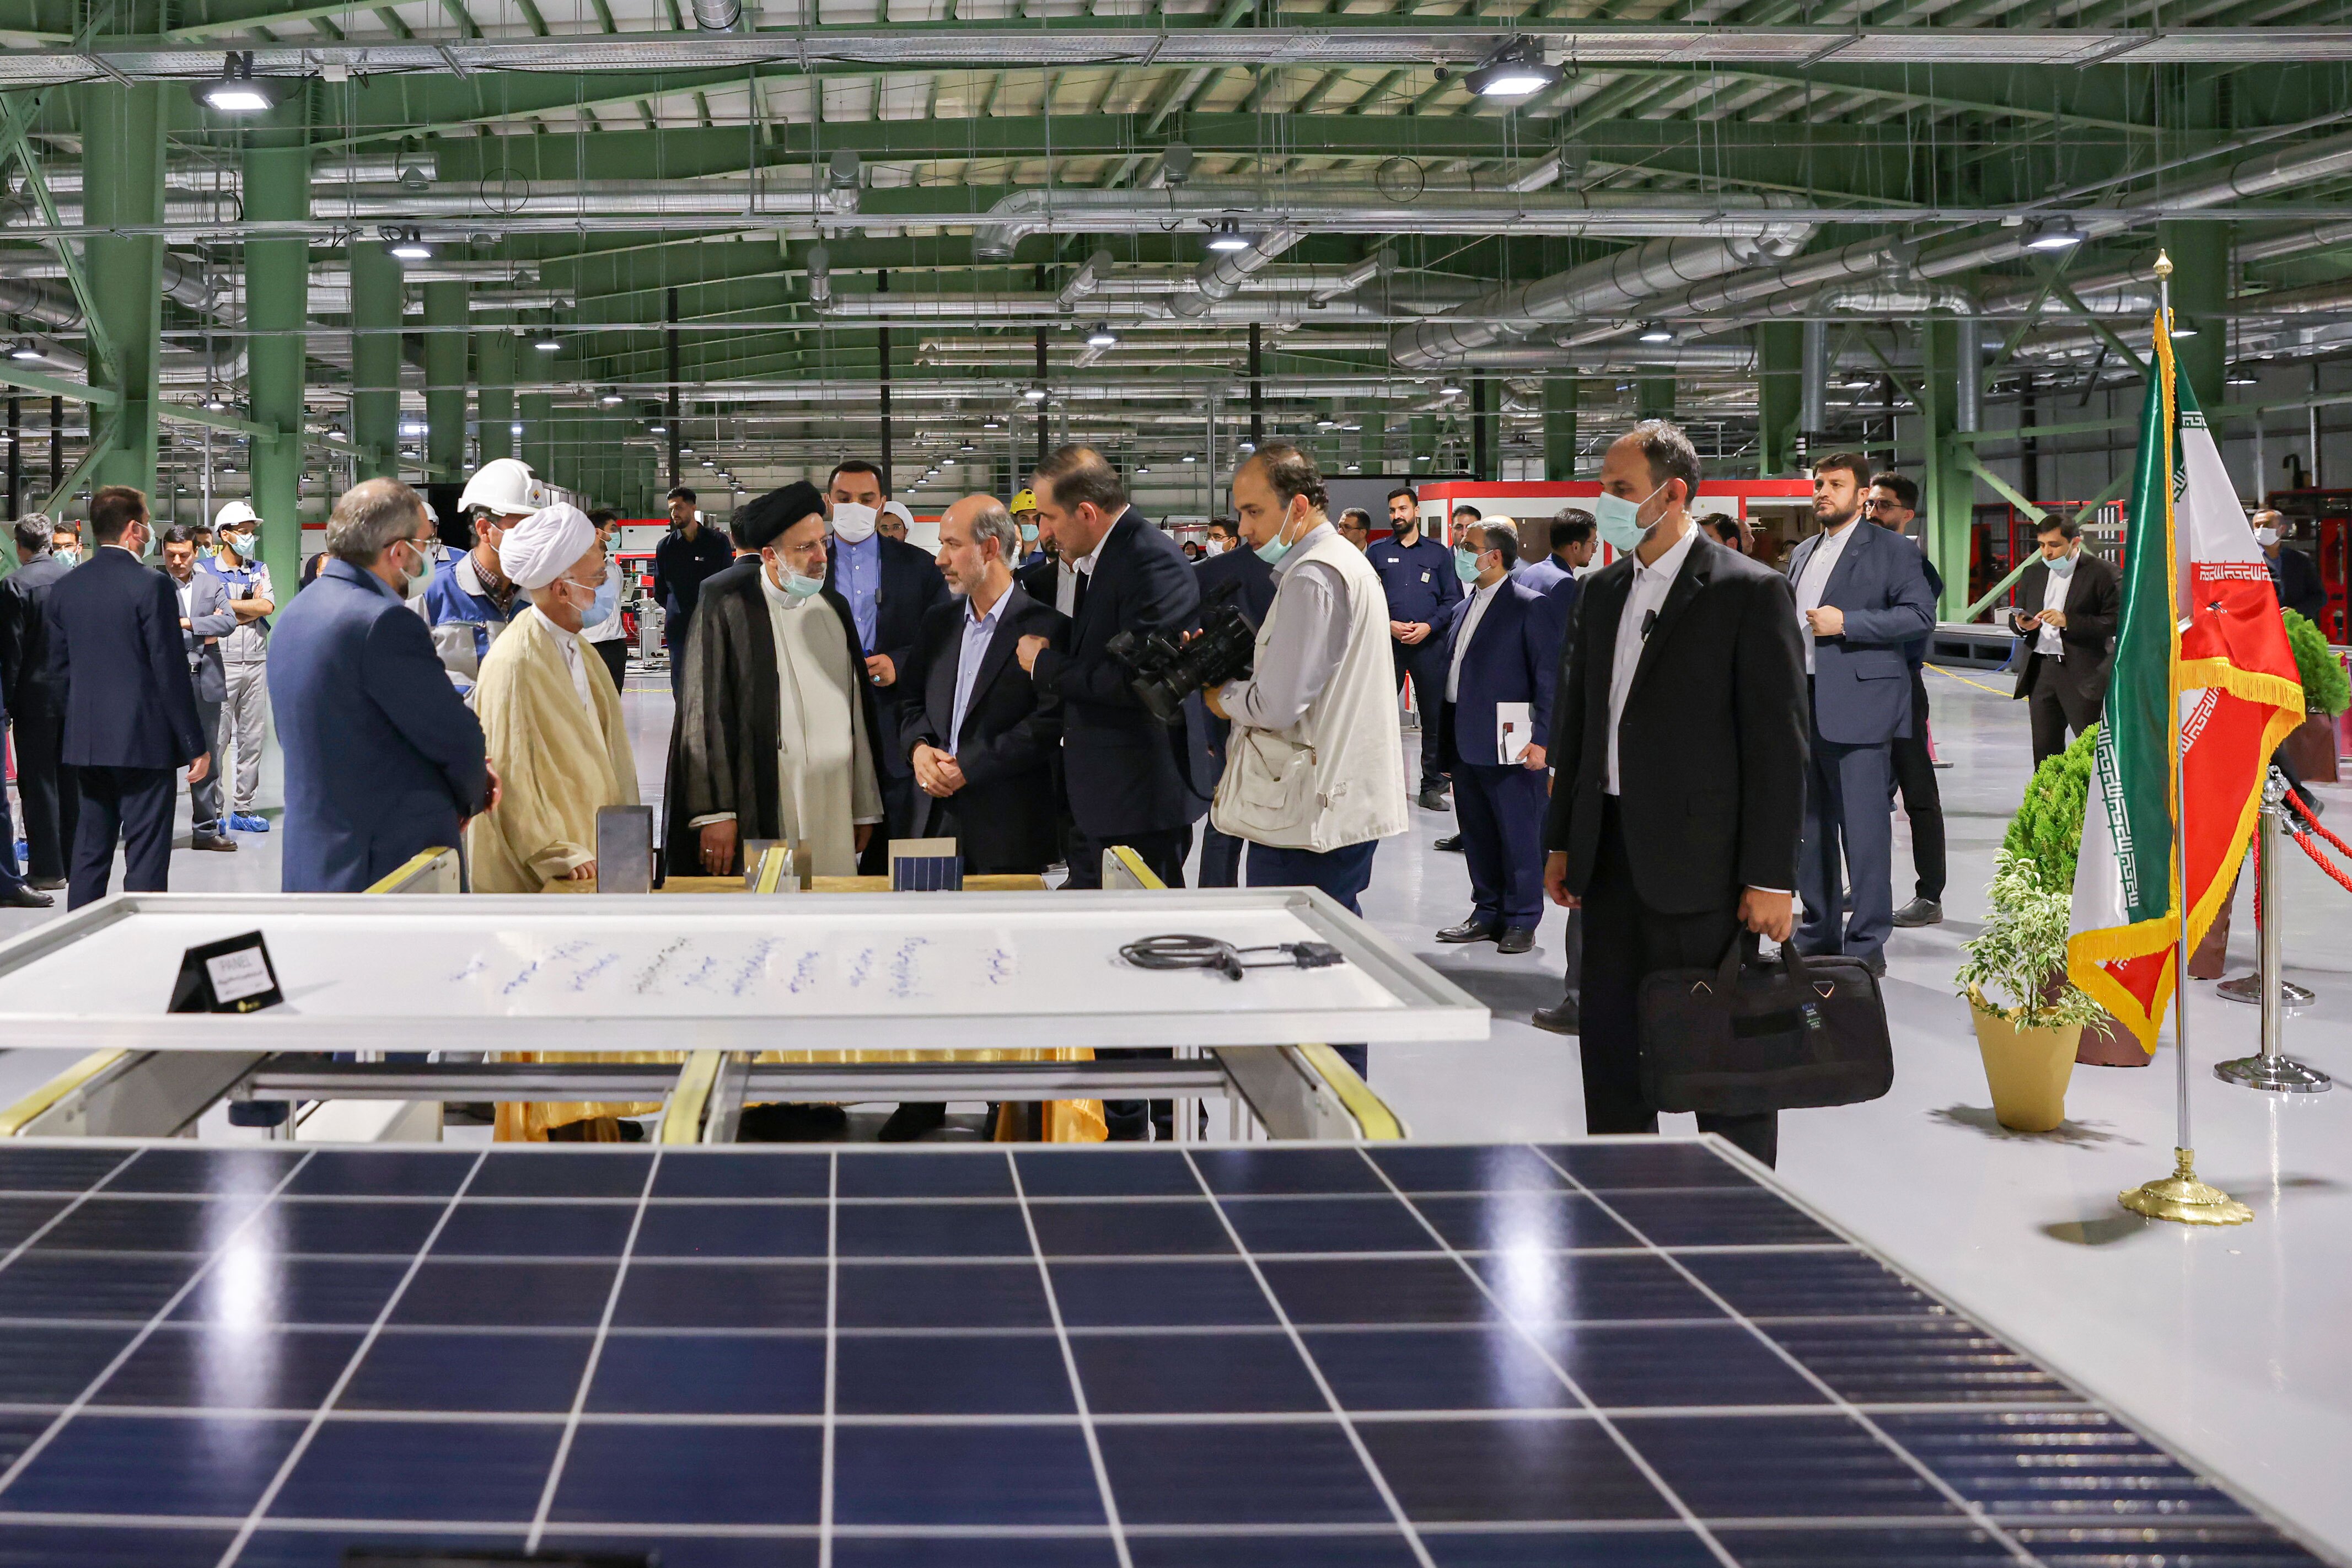 خداحافظی کارگران هپکو از رئیس جمهور با شعار «رئیسی دوستت داریم» / افتتاح بزرگترین کارخانه تولید پنل خورشیدی کشور در استان مرکزی